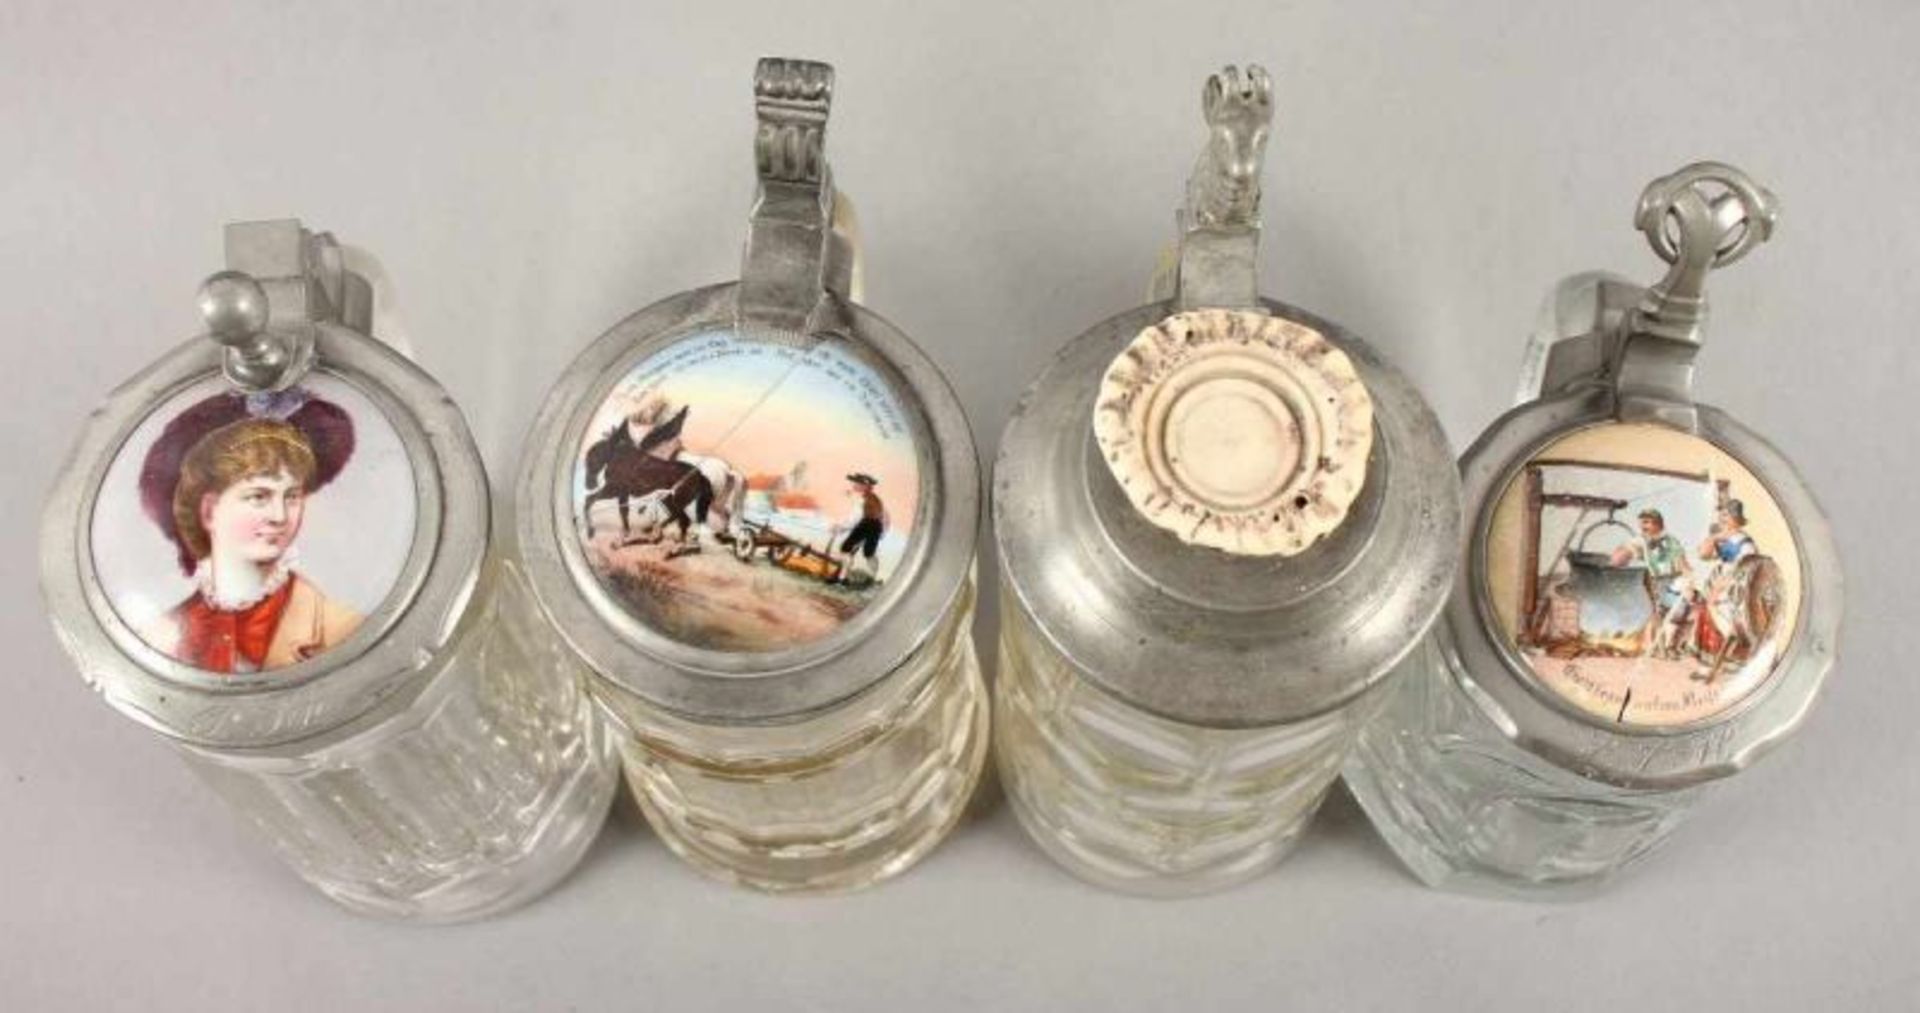 VIER GLASHUMPEN, farbloses Glas, Zinnmontur, drei Exemplare mit Porzellandeckel, polychrom - Bild 2 aus 4